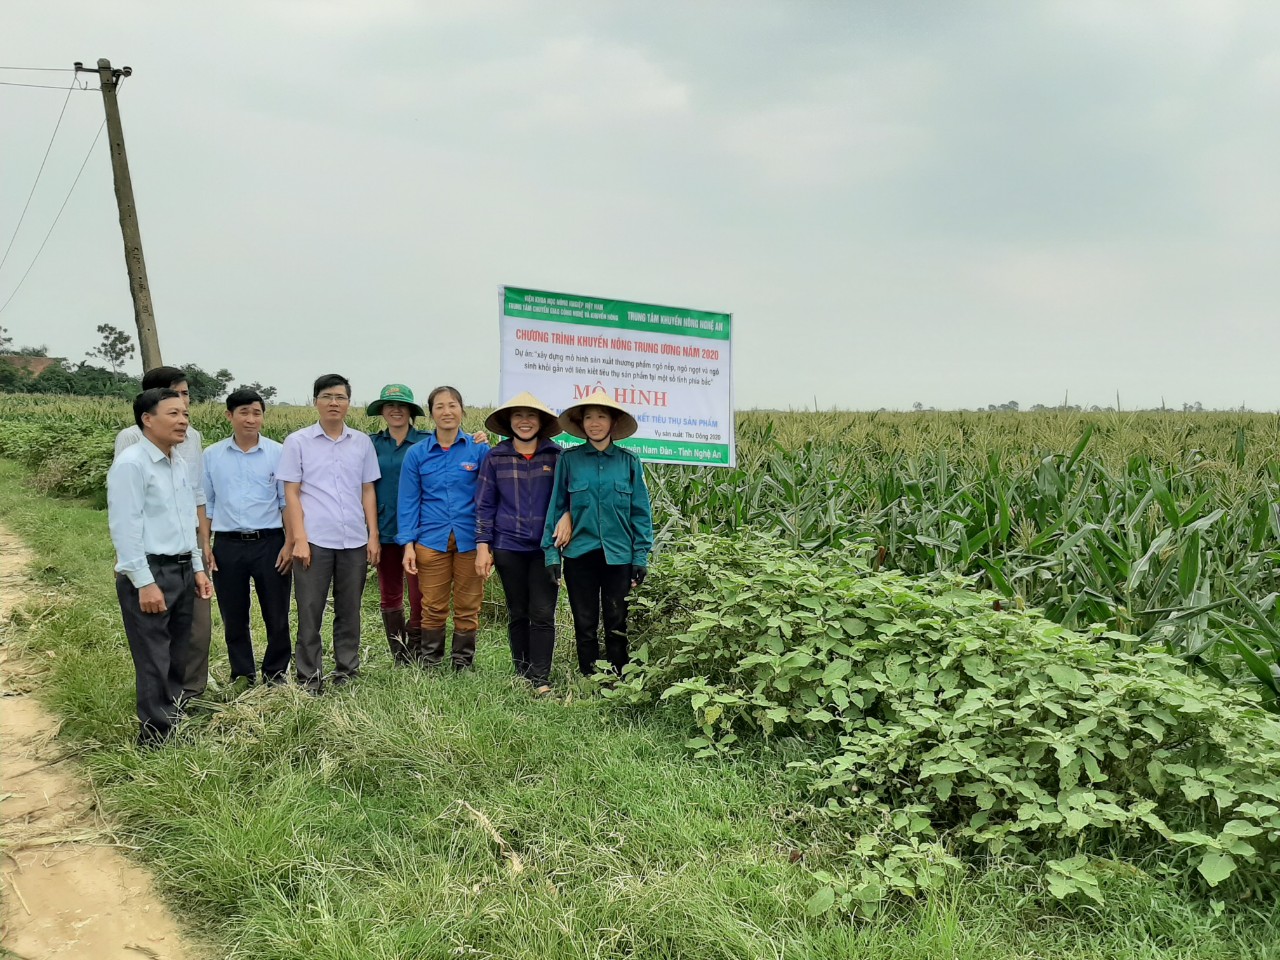 Trung tâm khuyến nông Nghệ An tổ chức tổng kết mô hình sản xuất ngô nếp gắn với liên kết tiêu thụ sản phẩm